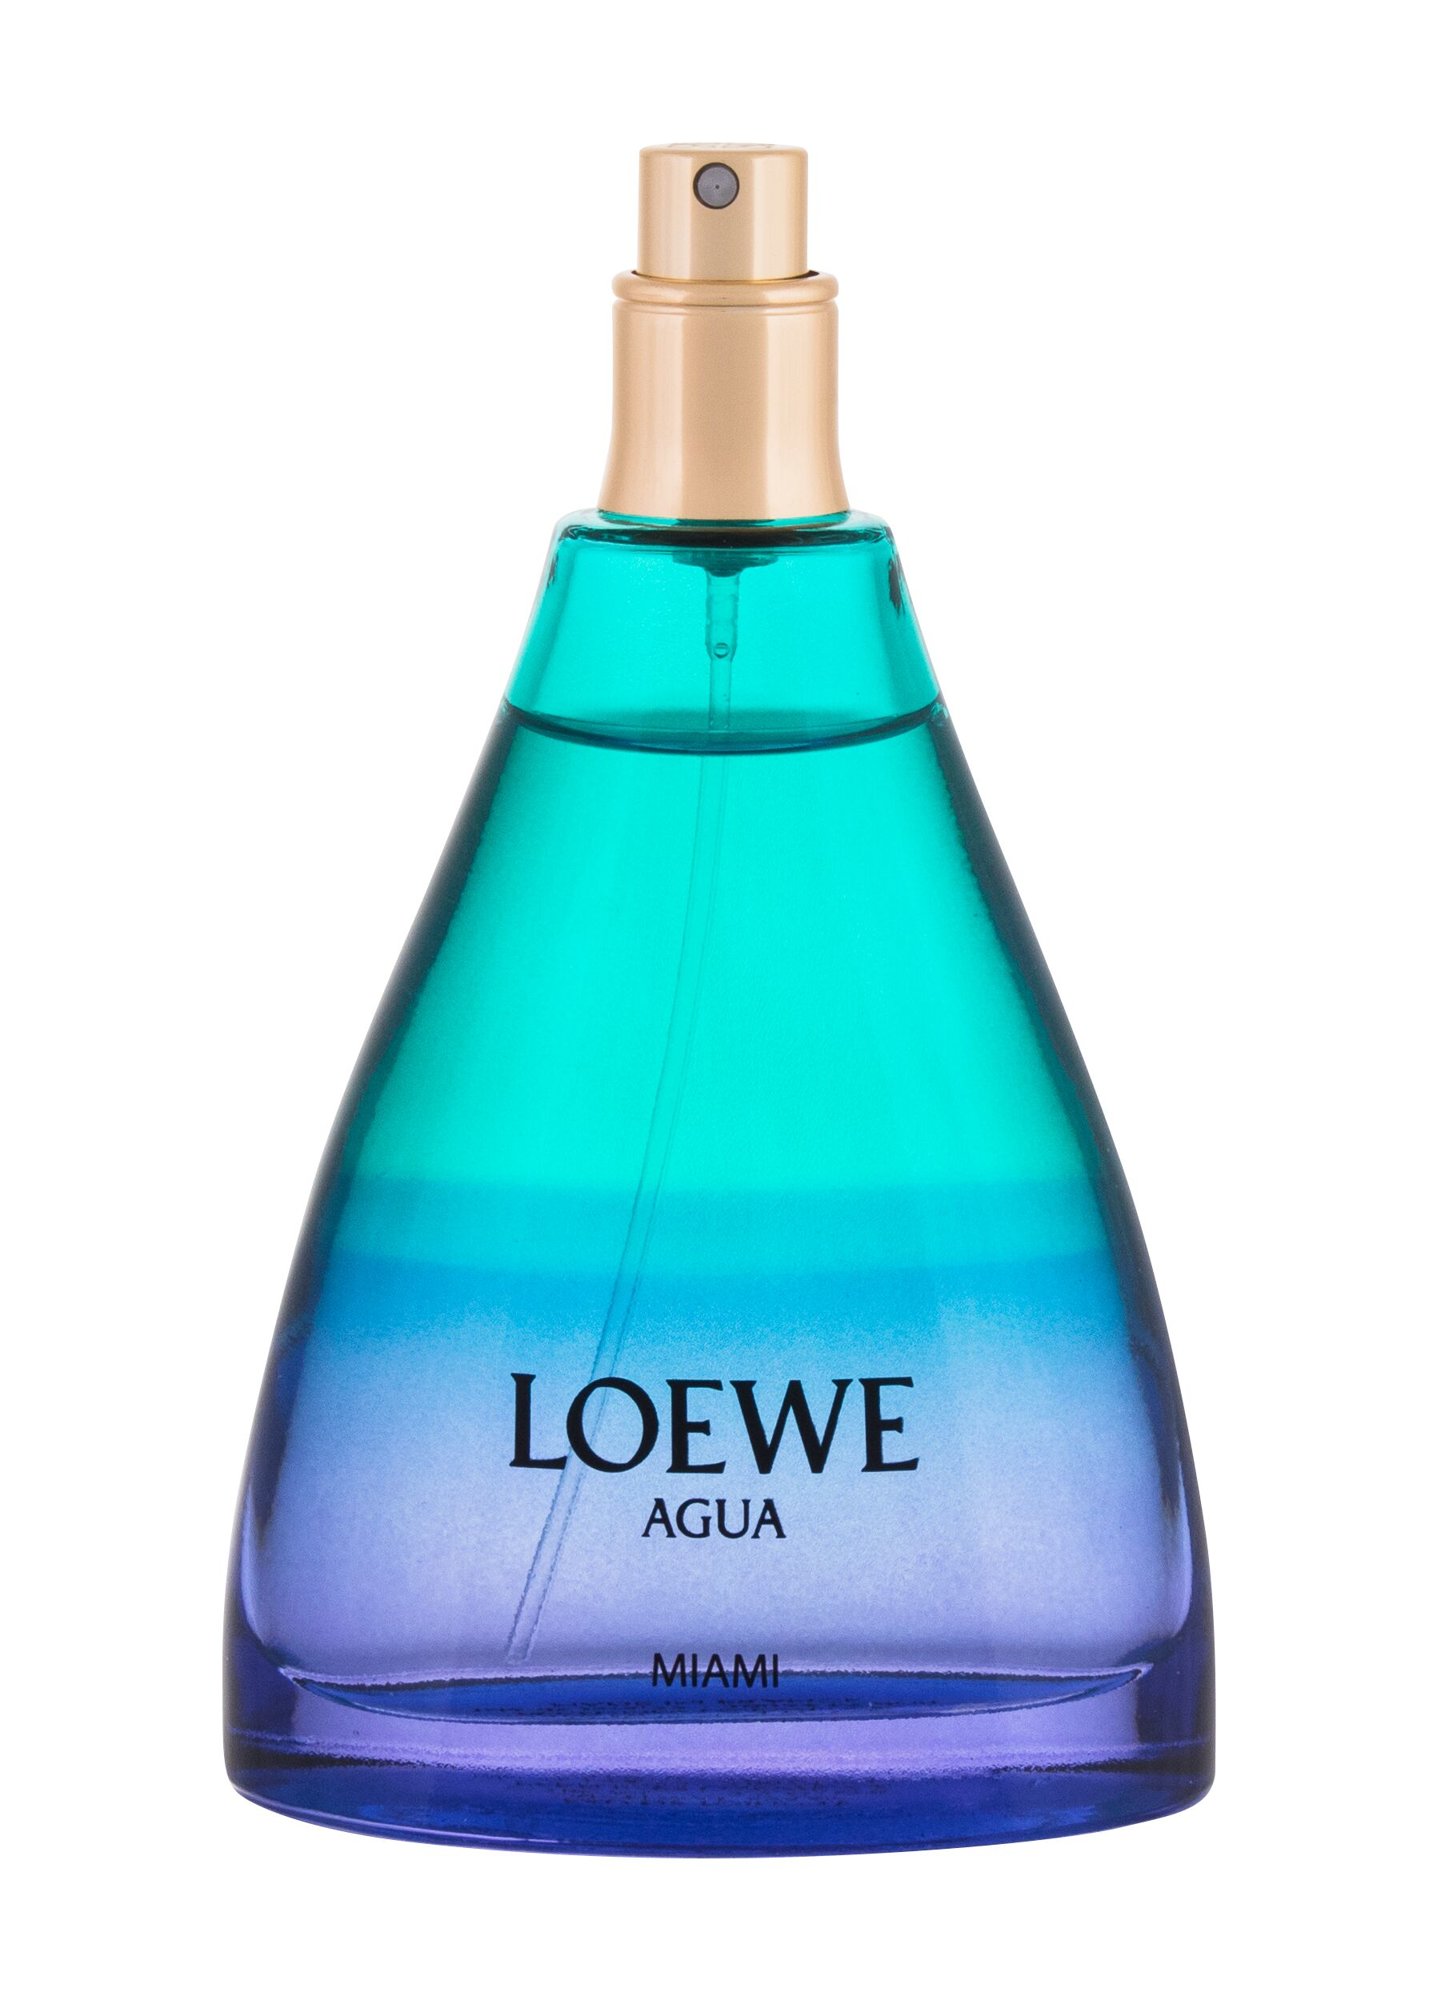 Loewe Agua Miami Kvepalai Unisex